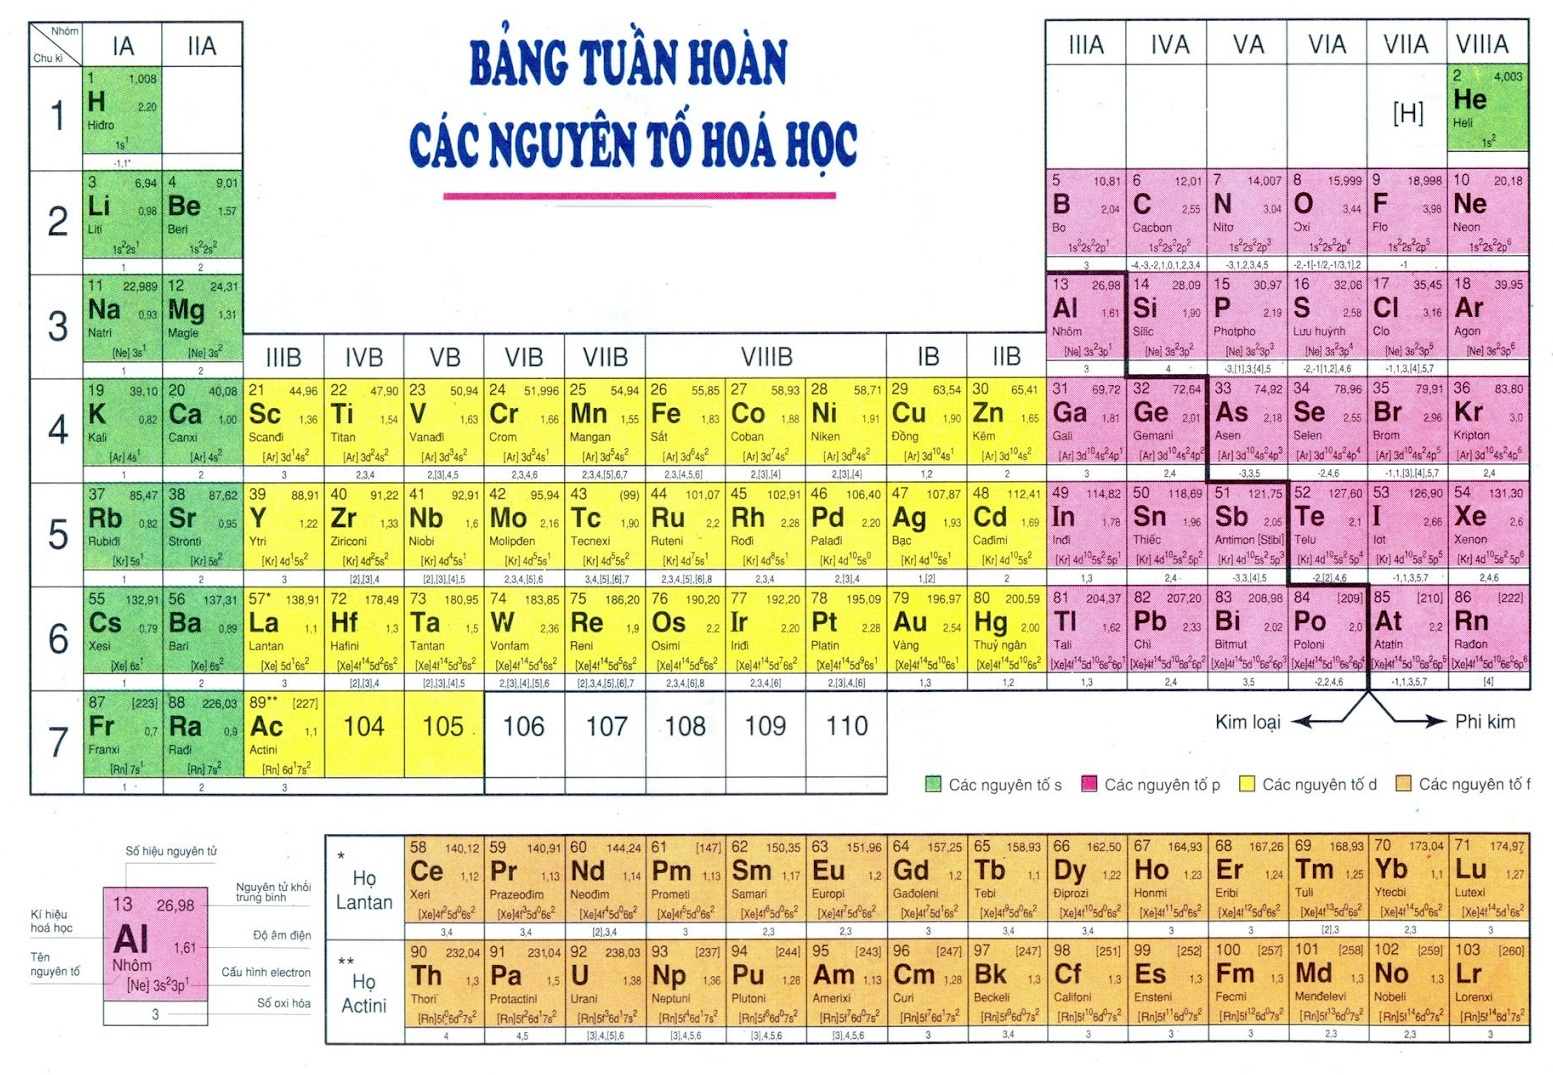 Sự biến đổi tính chất của nguyên tố trong hệ thống bảng tuần hoàn các nguyên tố hóa học. (Ảnh: Sưu tầm Internet)